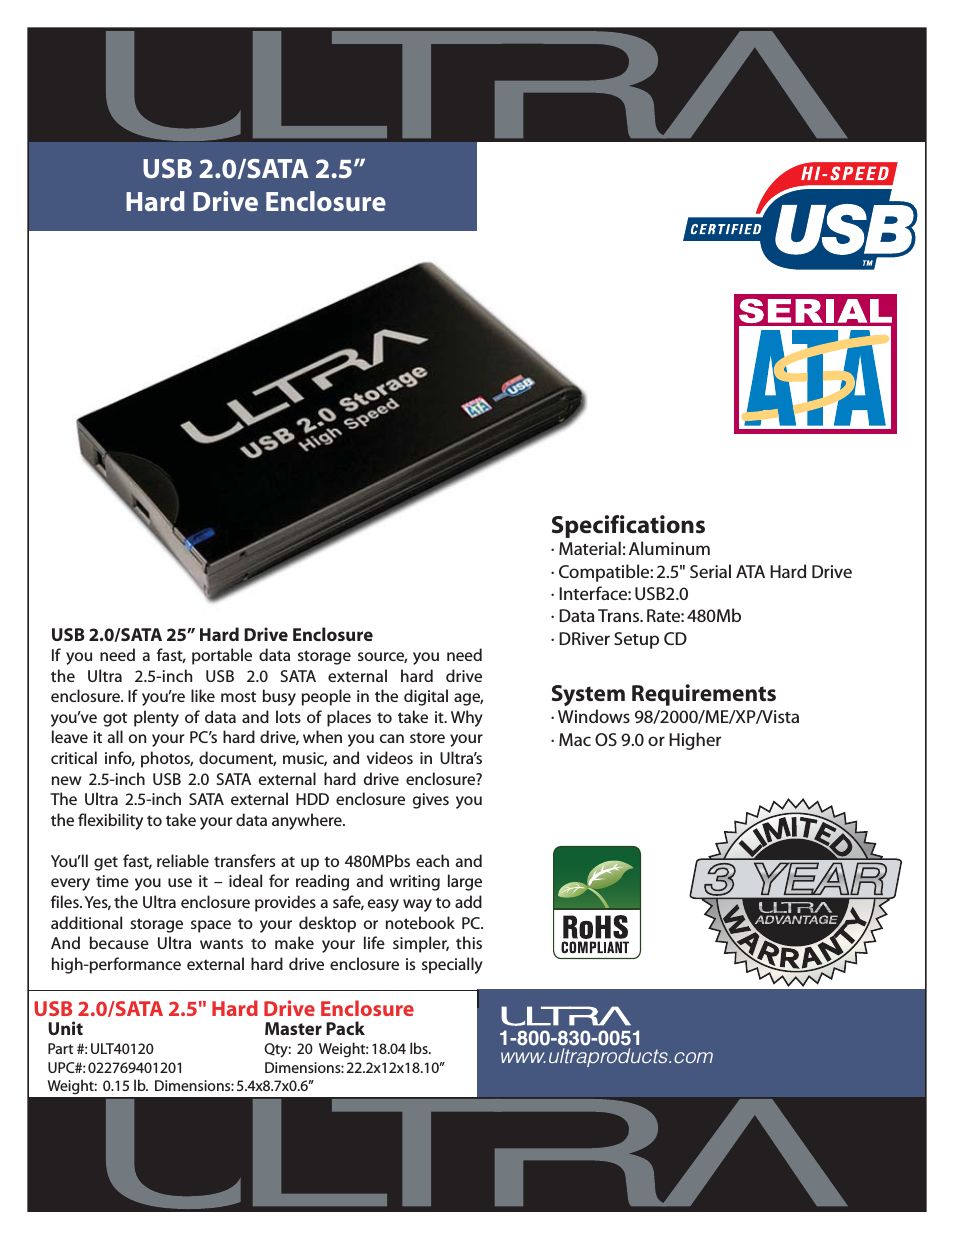 USB 2.0/SATA 2.5" Hard Drive Enclosure ULT40120